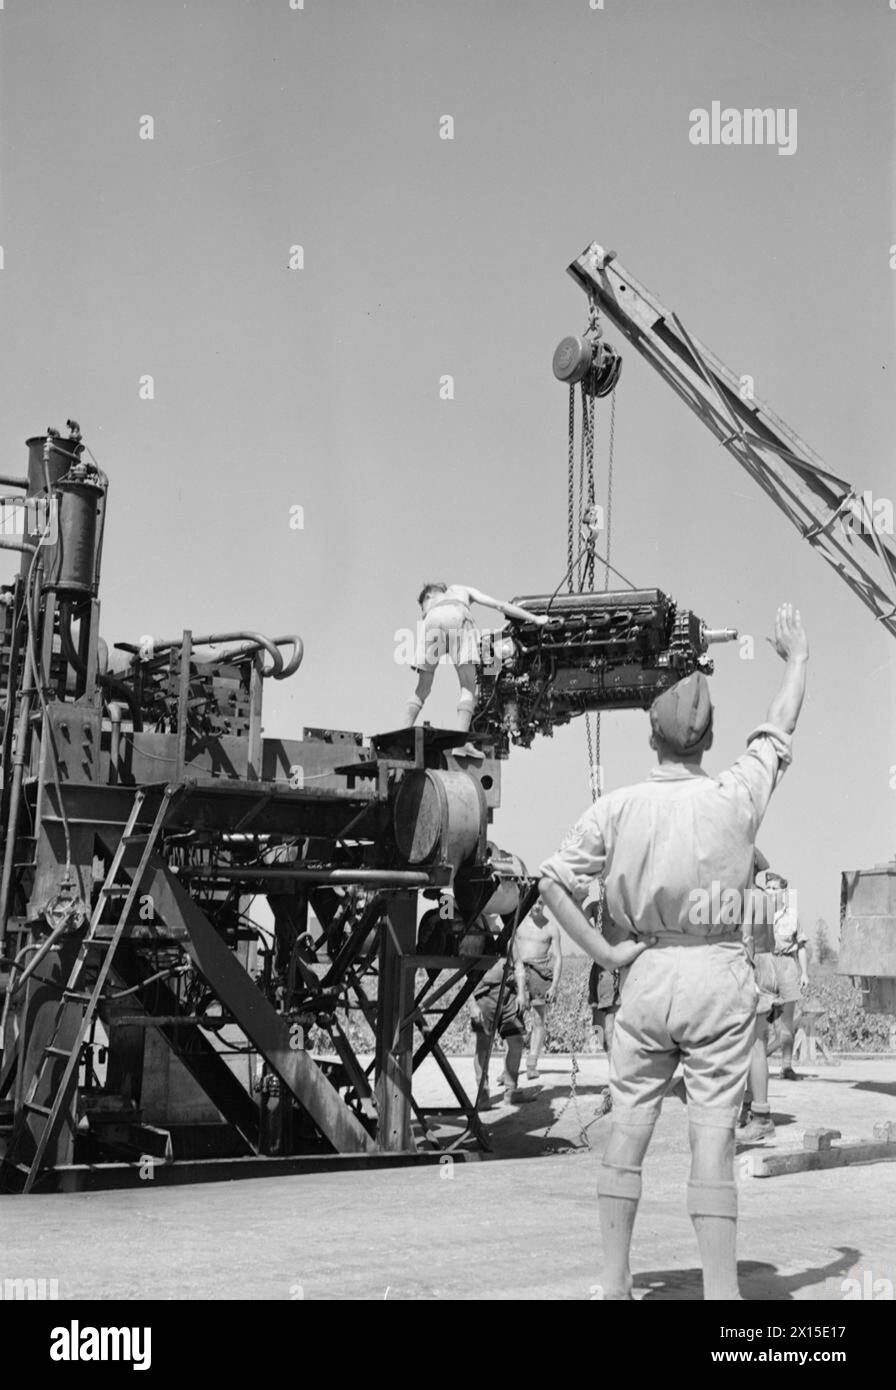 KÖNIGLICHE LUFTWAFFE IM NAHEN OSTEN UND NORDAFRIKA, 1939-1943 - Ein Rolls Royce Merlin-Triebwerk wird nach einer Überholung in der Wartungseinheit Nr. 144, Maison Blanche, Algeria Royal Air Force, Maintenance Unit, 144 auf einen Prüfstand geschleudert Stockfoto